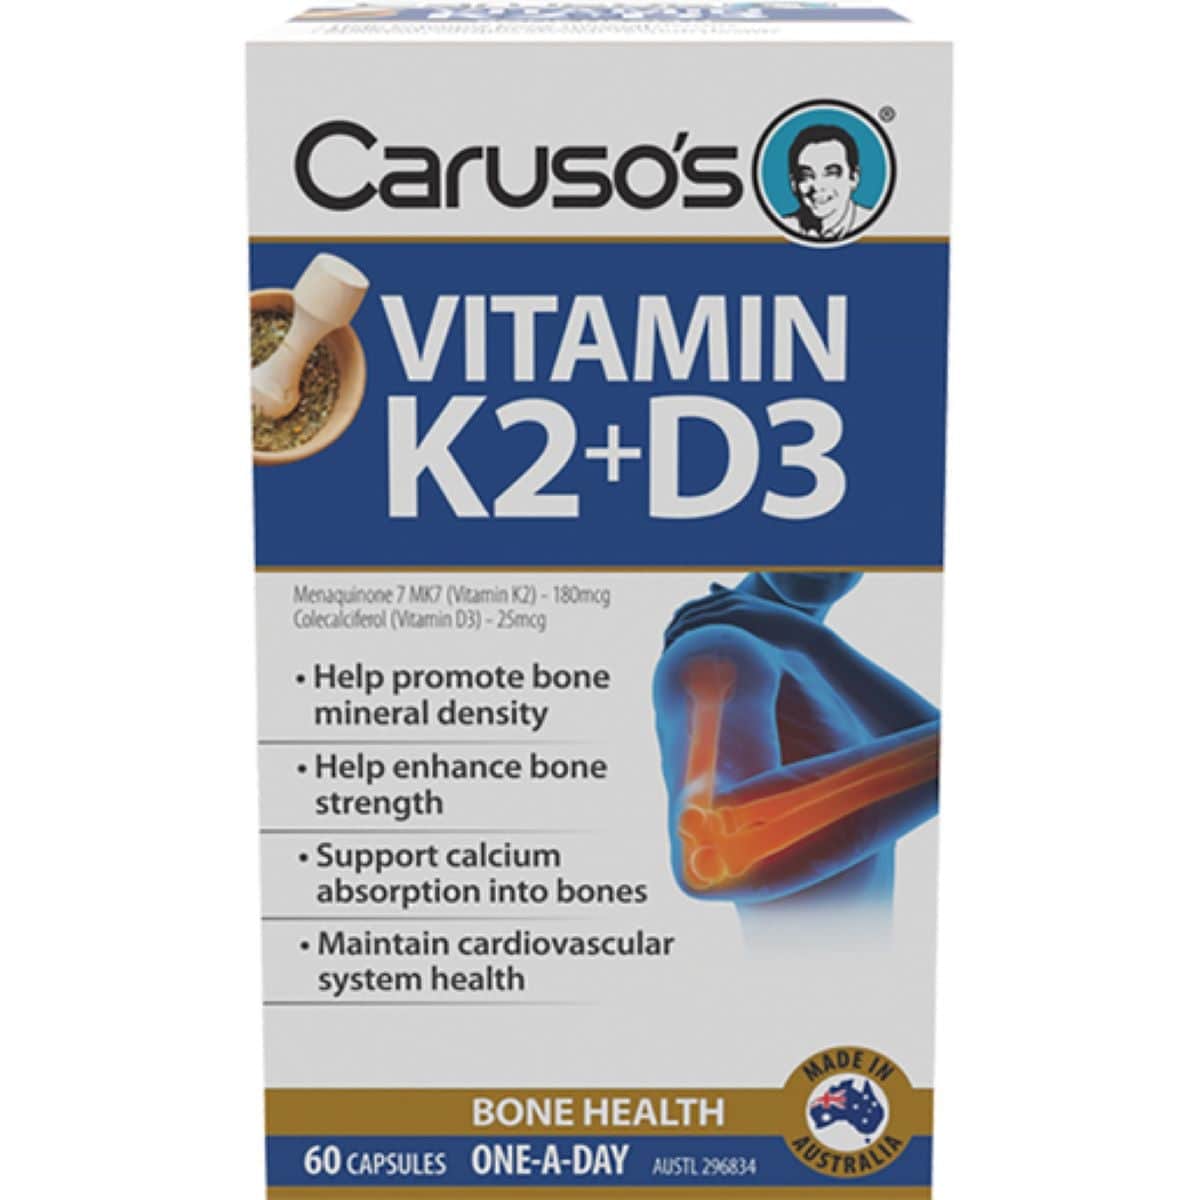 Carusos Vitamin K2 + D3 60 Capsules Australia